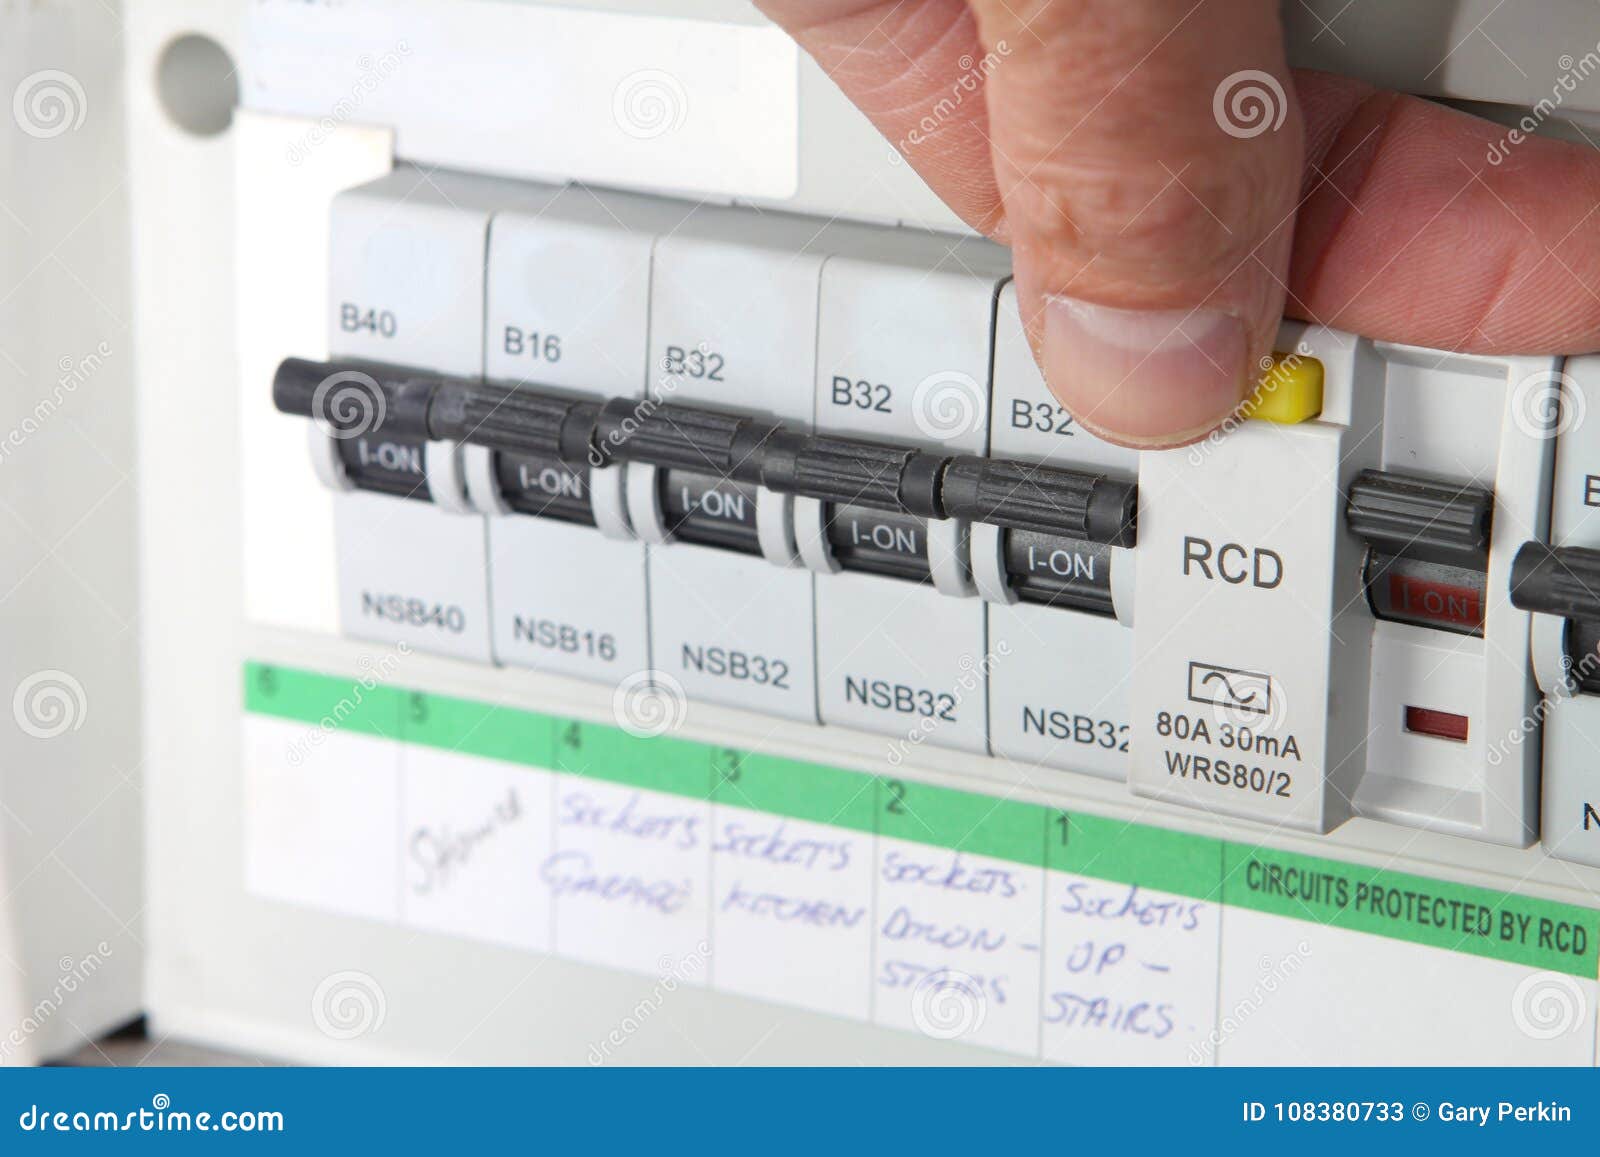 Seguridad eléctrica RCD prueba Etiquetas